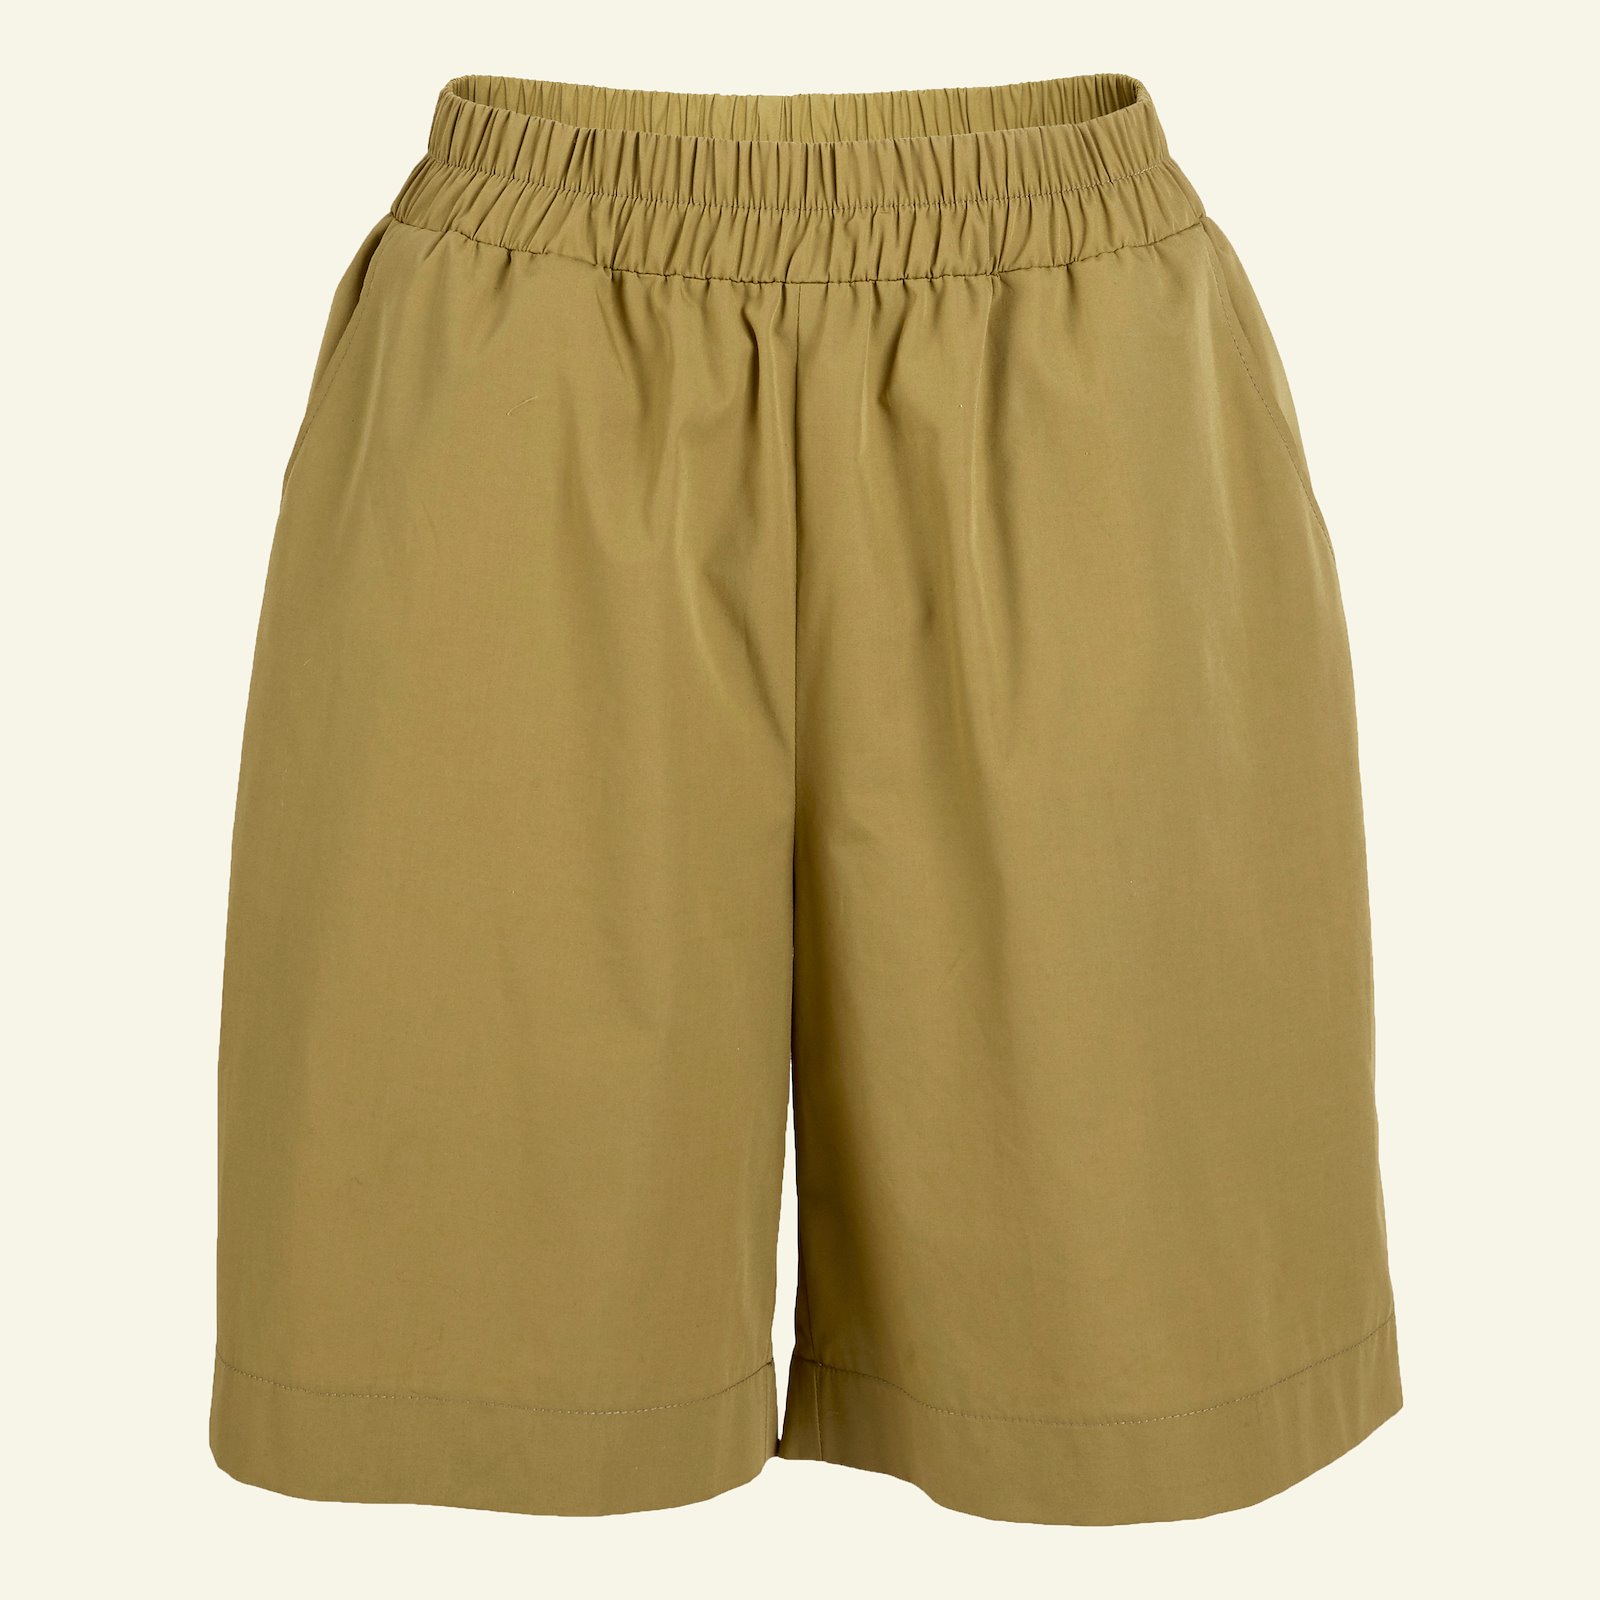 Bukse/shorts med vidde og lommer, 40 p20051_501926_sskit